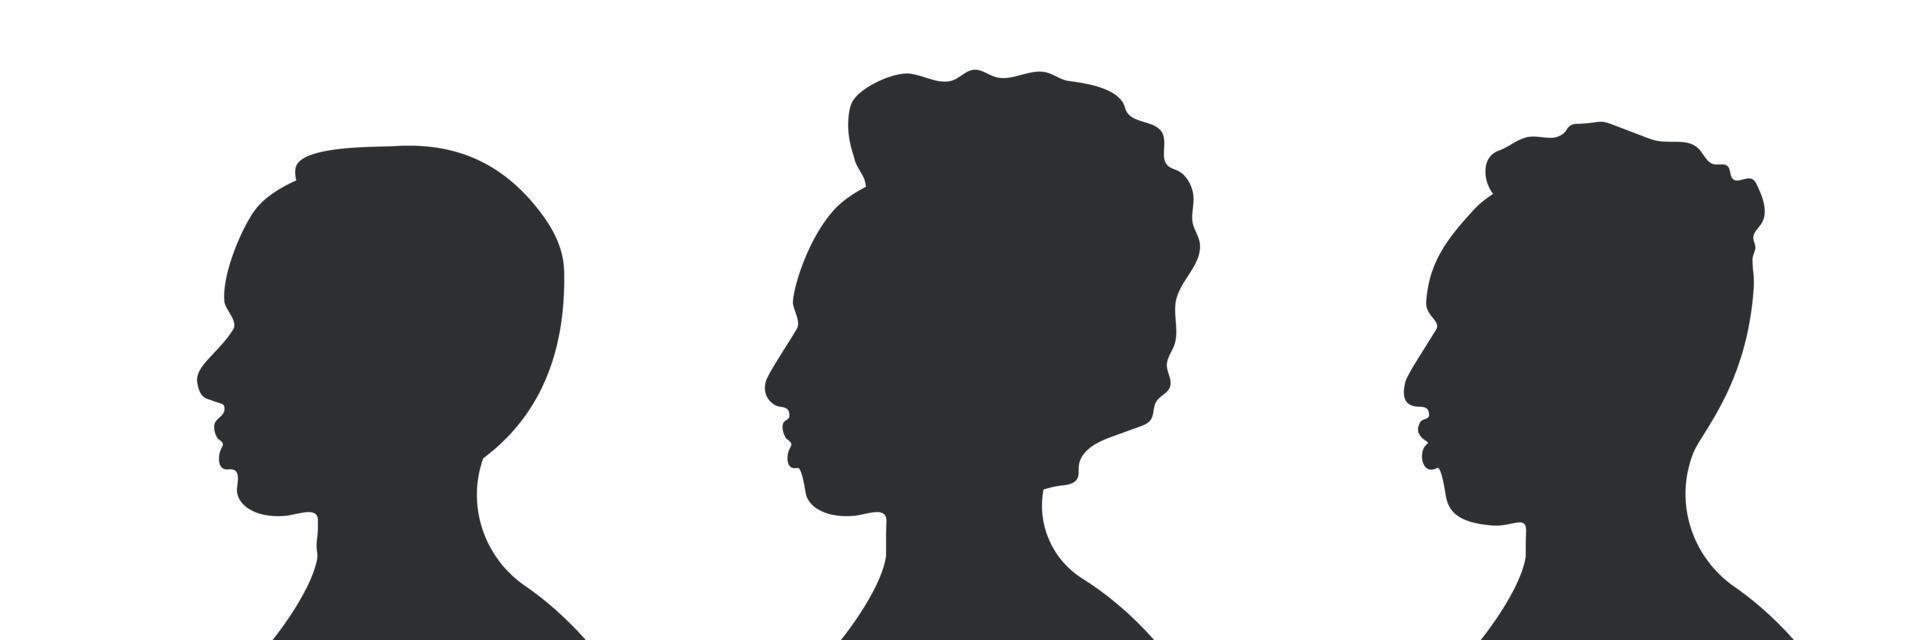 conjunto de hombres afroamericanos. contorno de silueta humana. cara de retrato masculino. ilustración vectorial vector